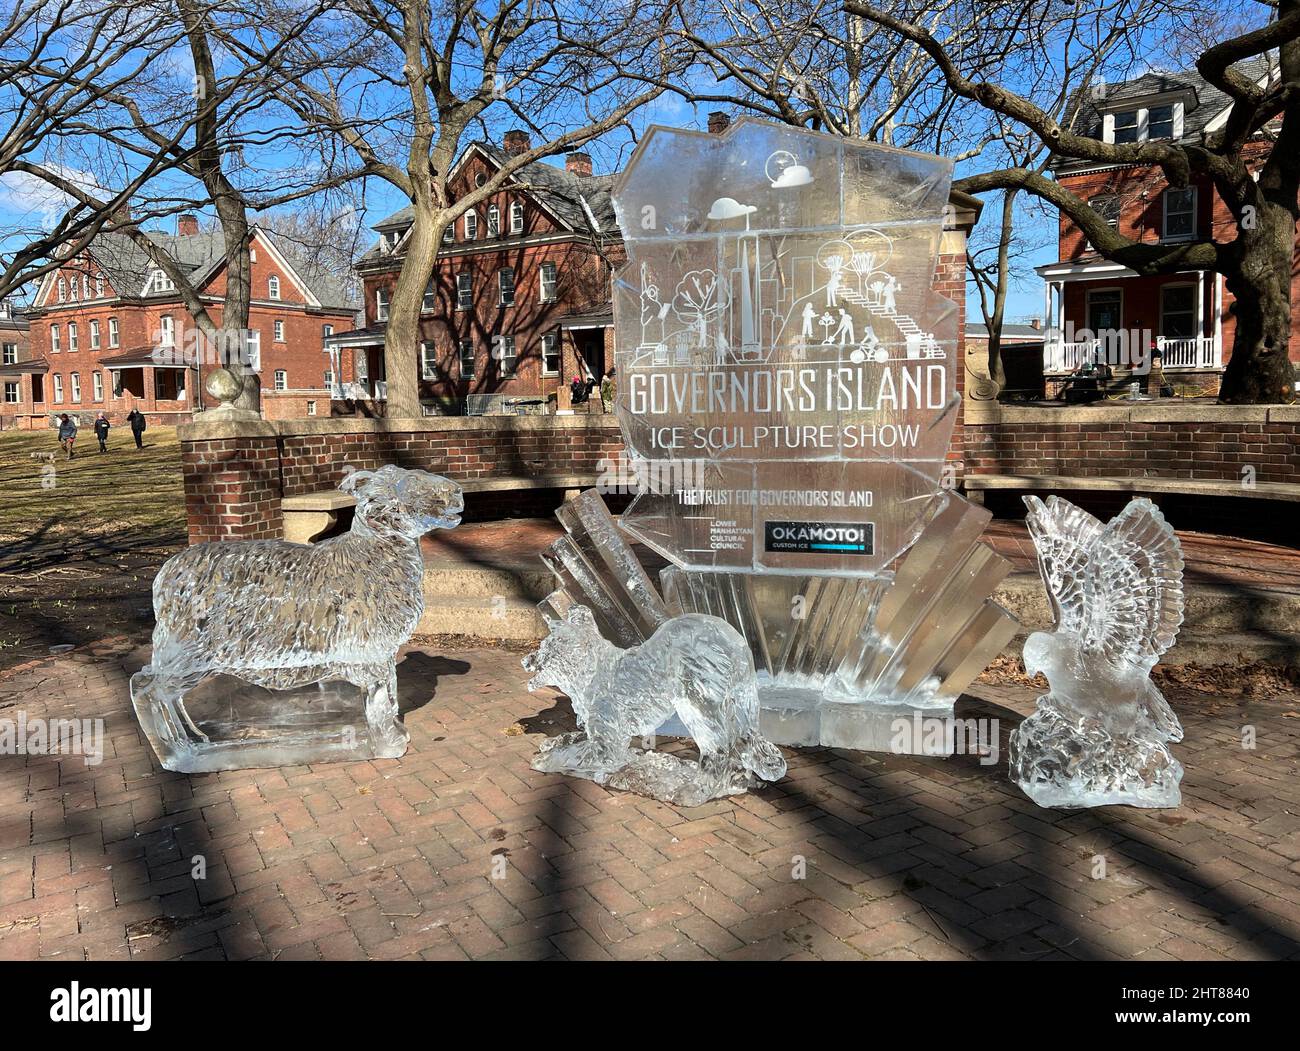 26 de febrero de 2022 - Governors Island, Nueva York, NY, Estados Unidos. Espectáculo de esculturas de hielo en Governors Island, uno de los 2022 eventos de Winter Village en la isla. Foto de stock